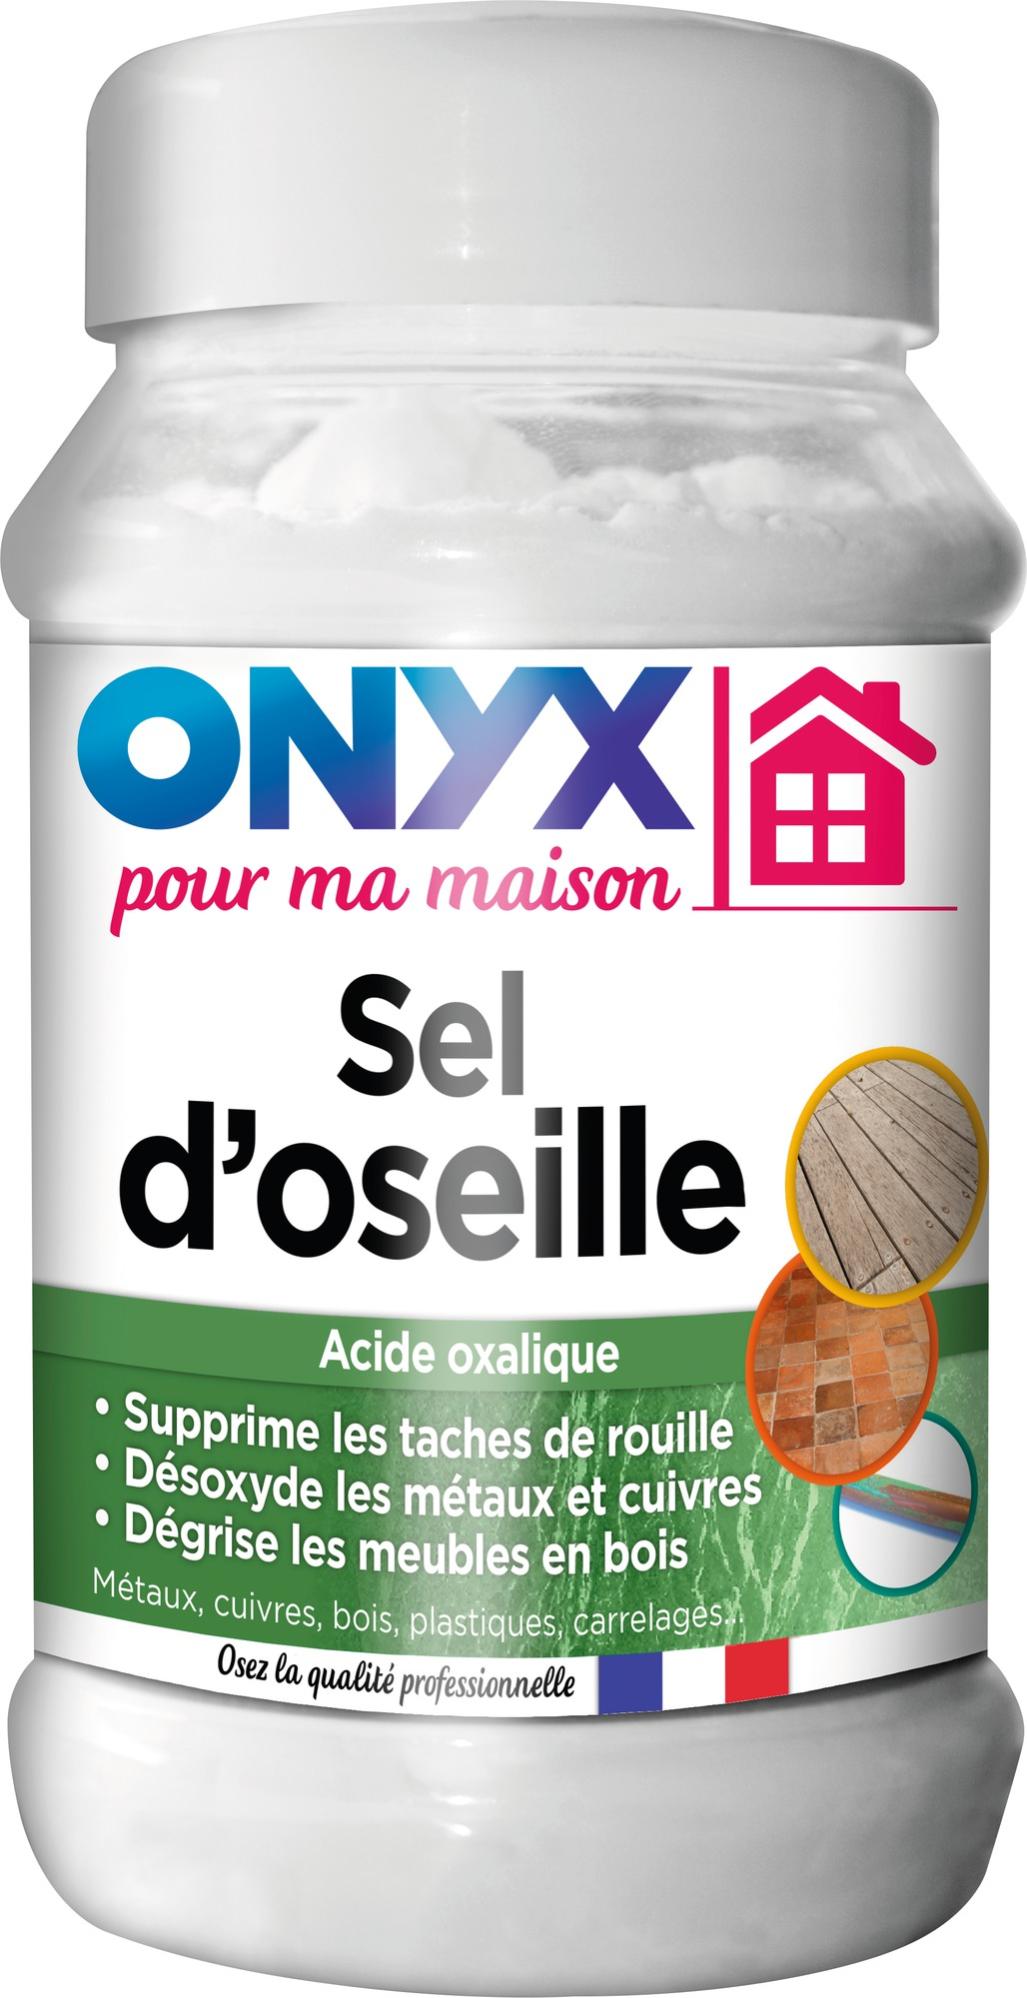 L'acide oxalique (sel d'oseille), l'autre produit miracle - France